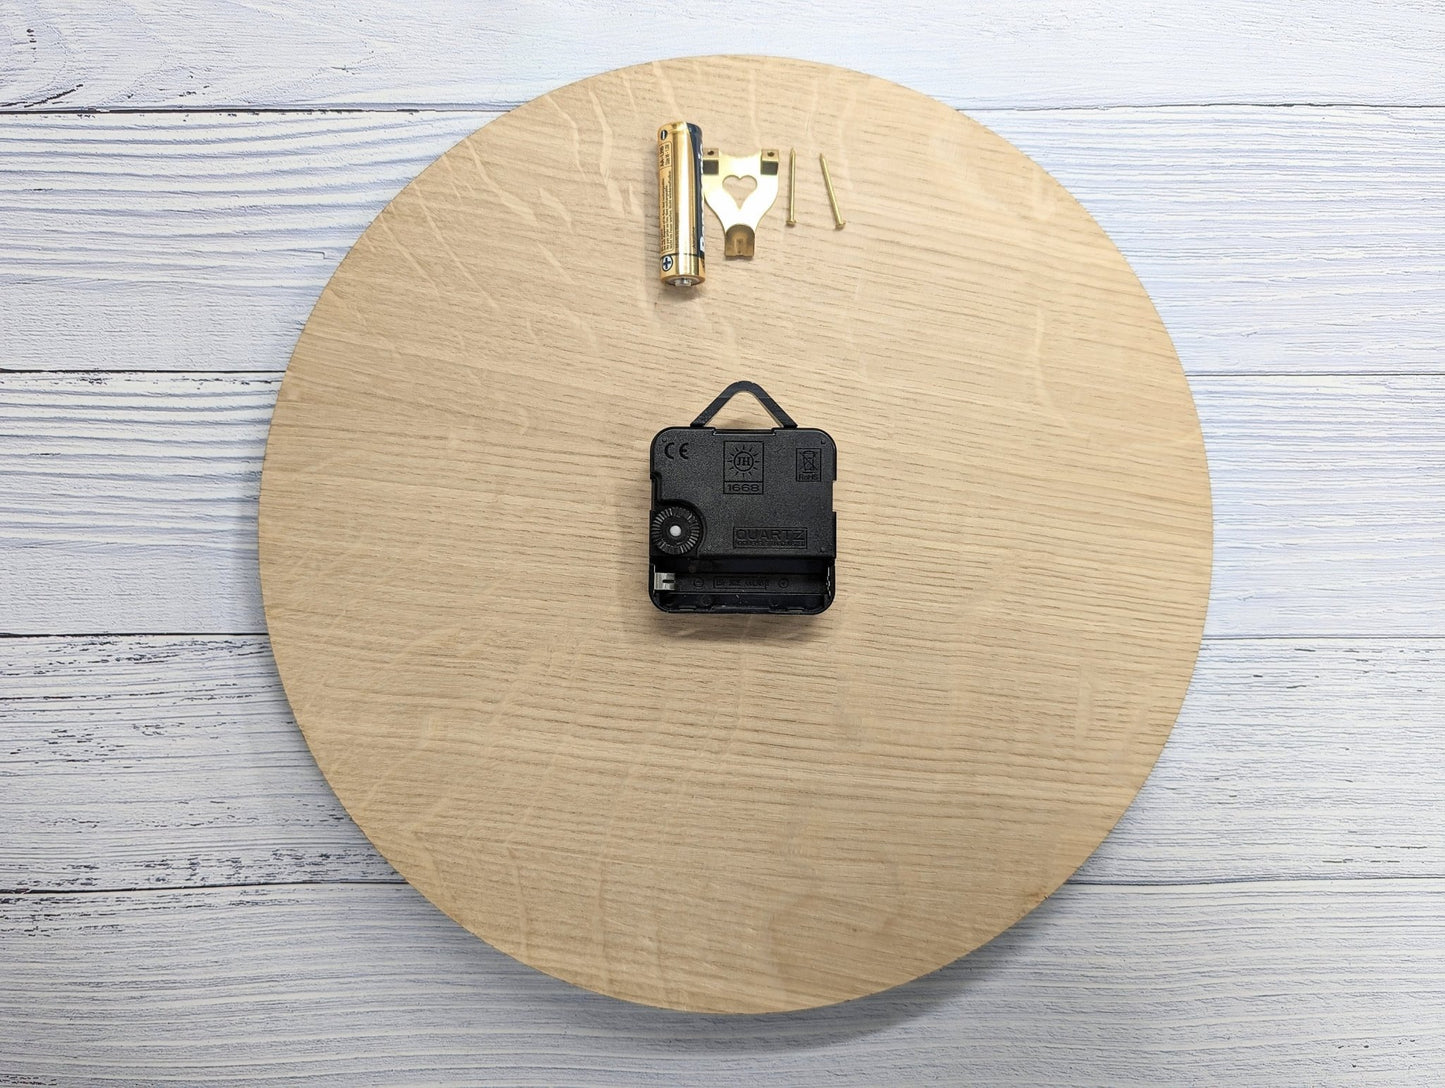 Personalised Wooden Logo Wall Clock - Custom Engraved Branded Timepiece - Eco-Friendly Oak Veneer - Sustainable Packaging - 30cm - CherryGroveCraft